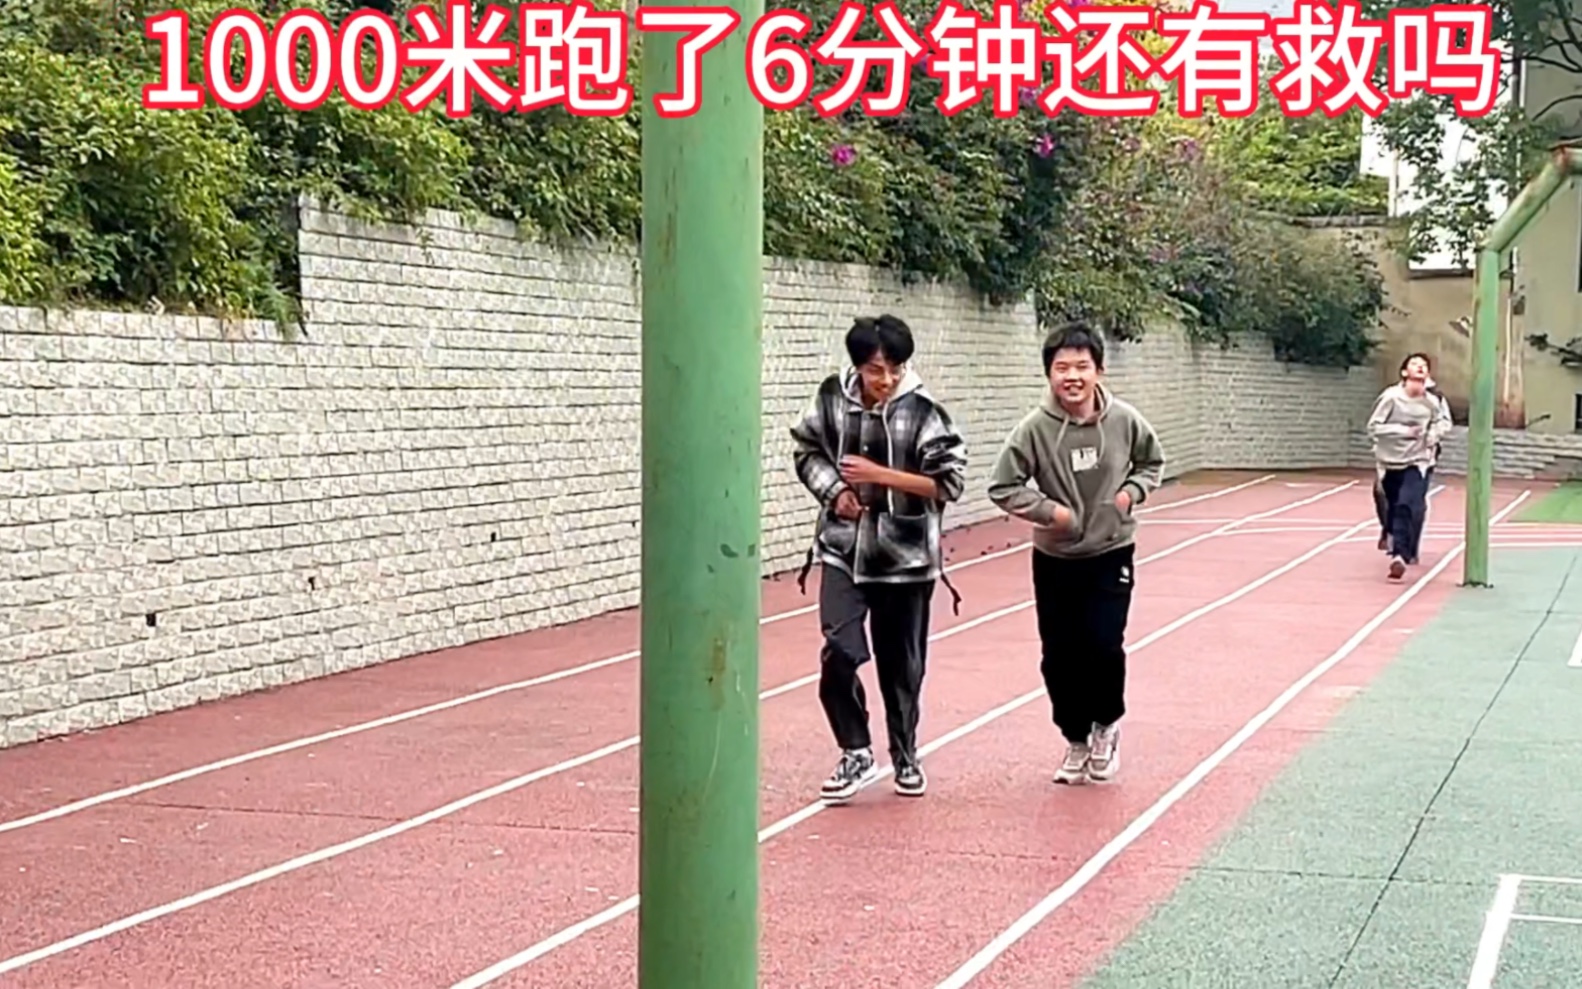 1000米跑6分钟，还有救吗？#中考体育 #1000米